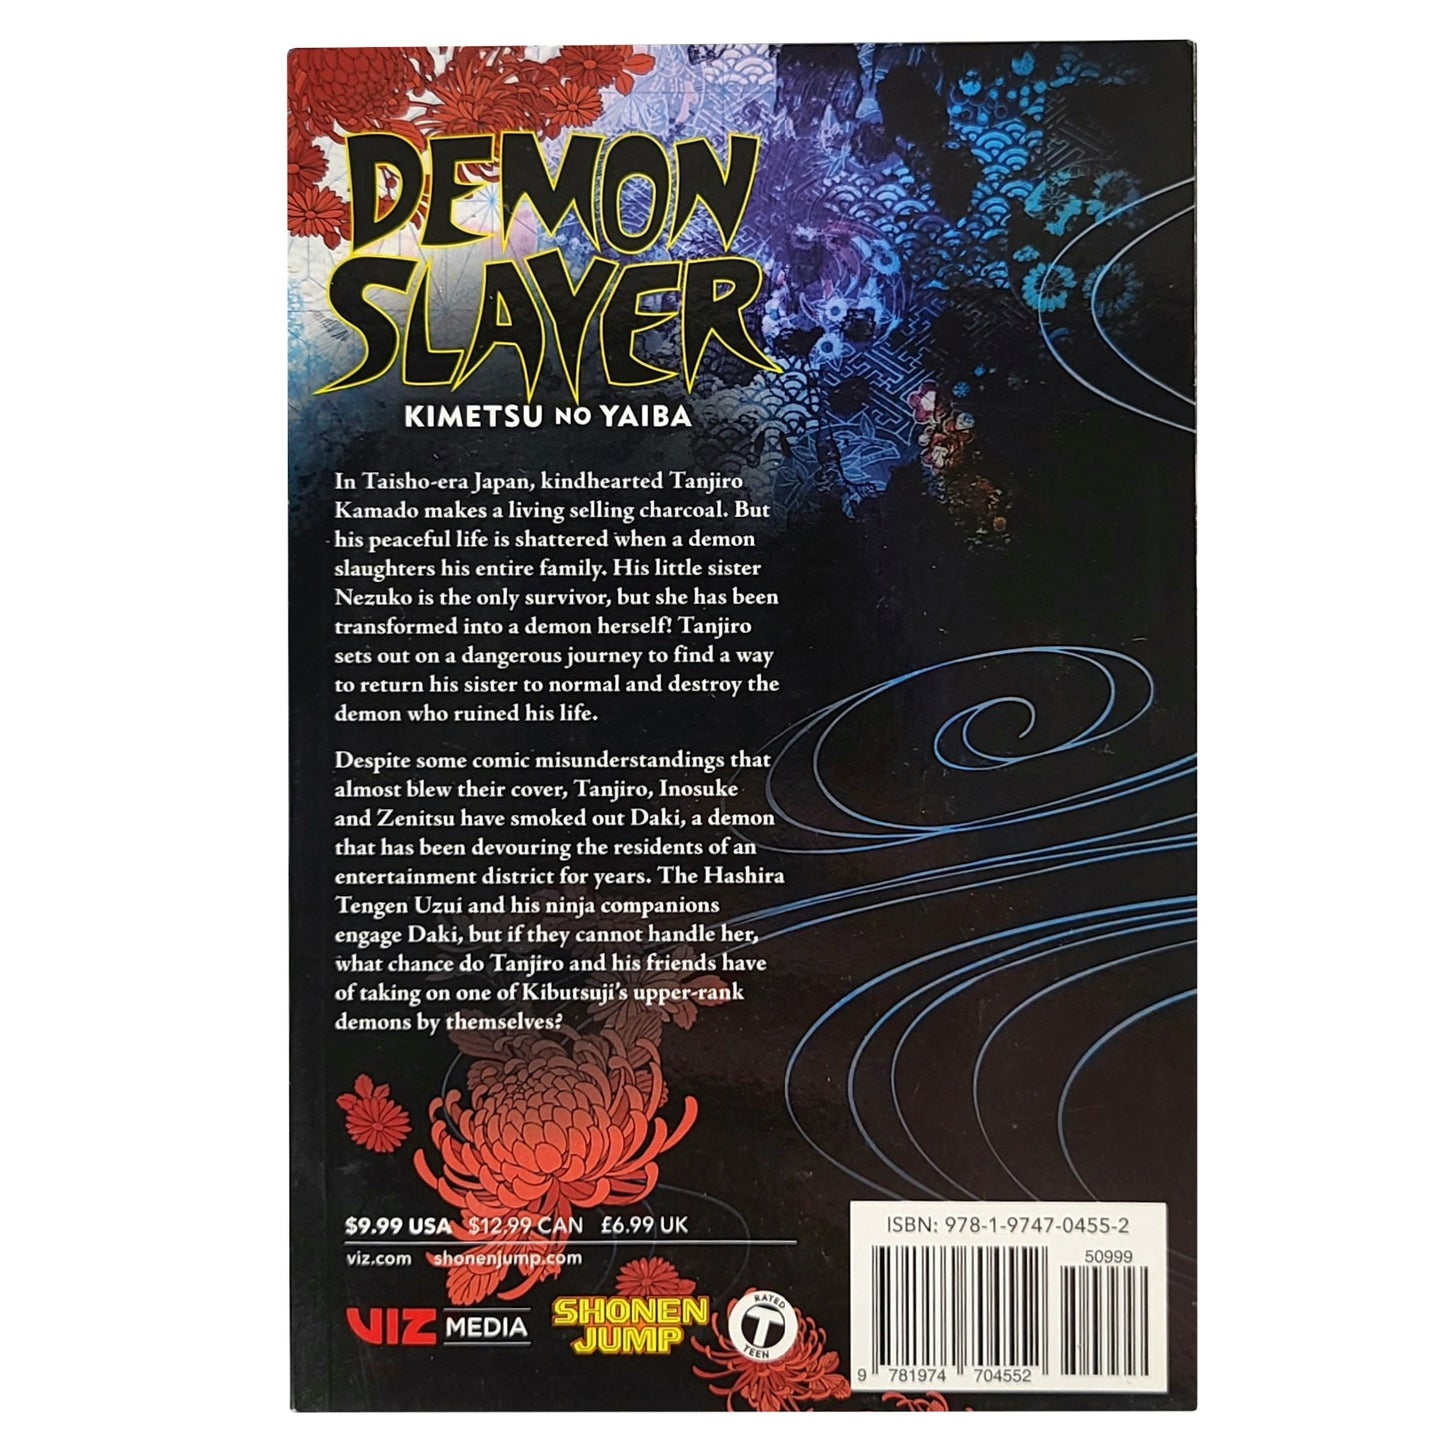 Demon Slayer: Kimetsu no Yaiba Vol. 10